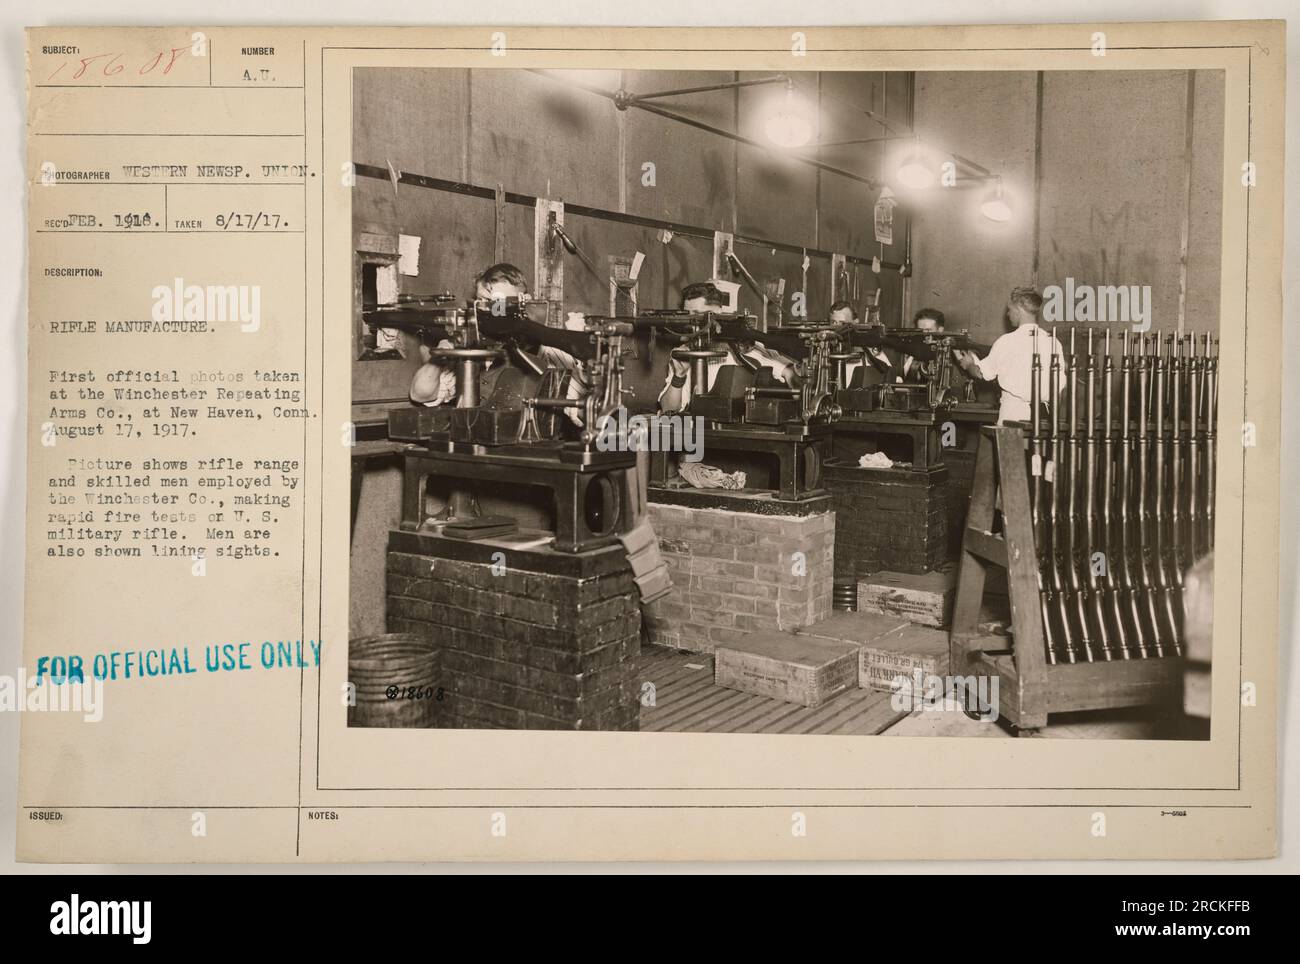 Una fotografia scattata il 17 agosto 1917 a Winchester Repeating Arms Co. A New Haven, Conn. L'immagine mostra il raggio d'azione dei fucili e i lavoratori qualificati che conducono test rapidi sul fucile militare T.S. Gli uomini nella foto sono anche visti regolare la visuale dei fucili. Questa è una foto ufficiale per scopi militari. Foto Stock